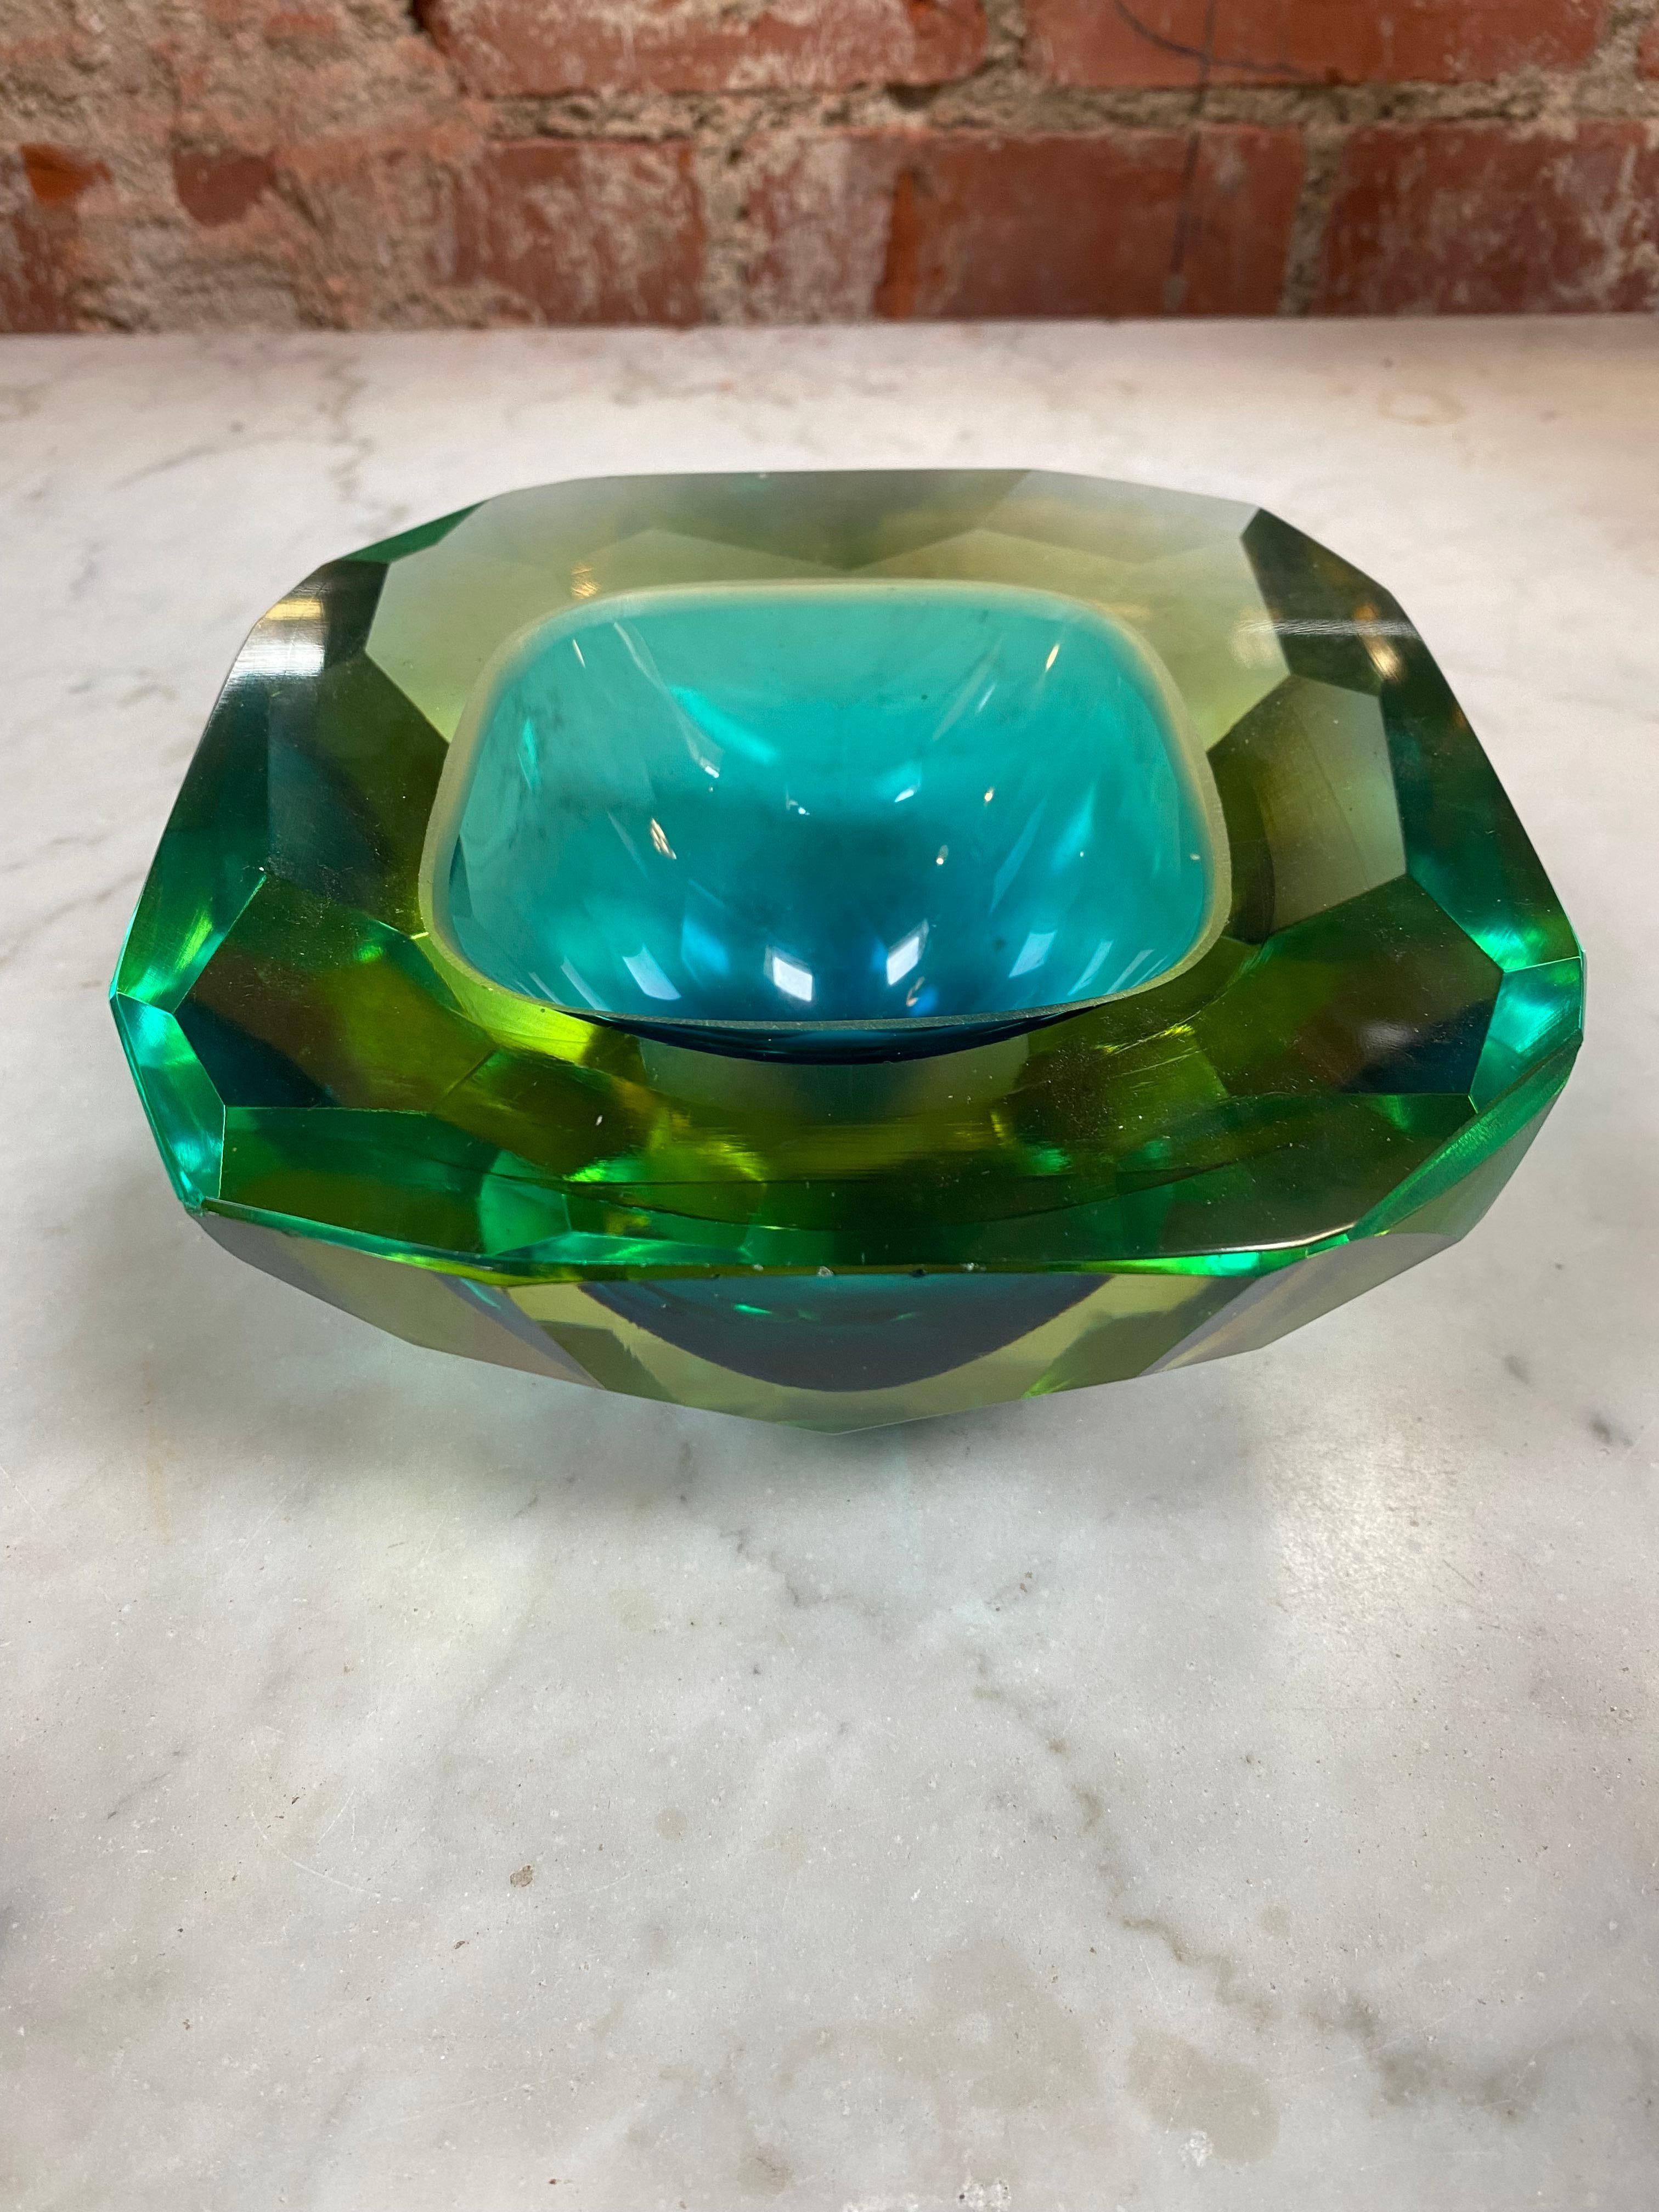 Schöne italienische dekorative Kristallschale in schwerer Qualität und einer auffälligen, giftgrünen Farbe. Dramatisches Design mit einem Lichtspiel im dicken Glas.
 